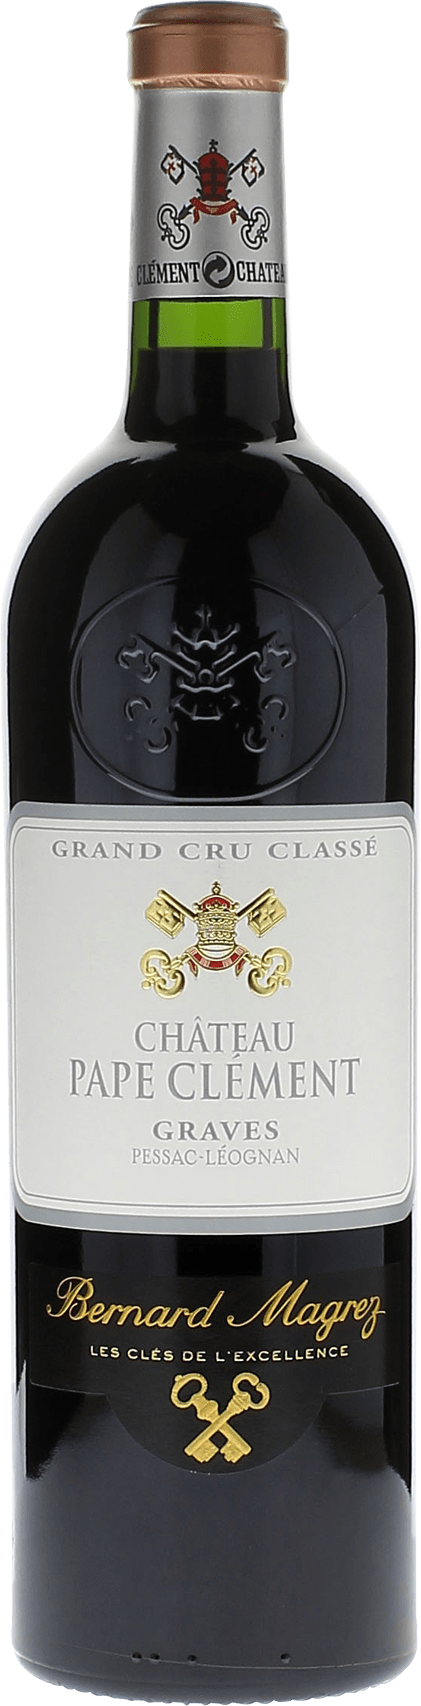 Pape clement rouge 1994 Grand Cru Class Graves, Bordeaux rouge